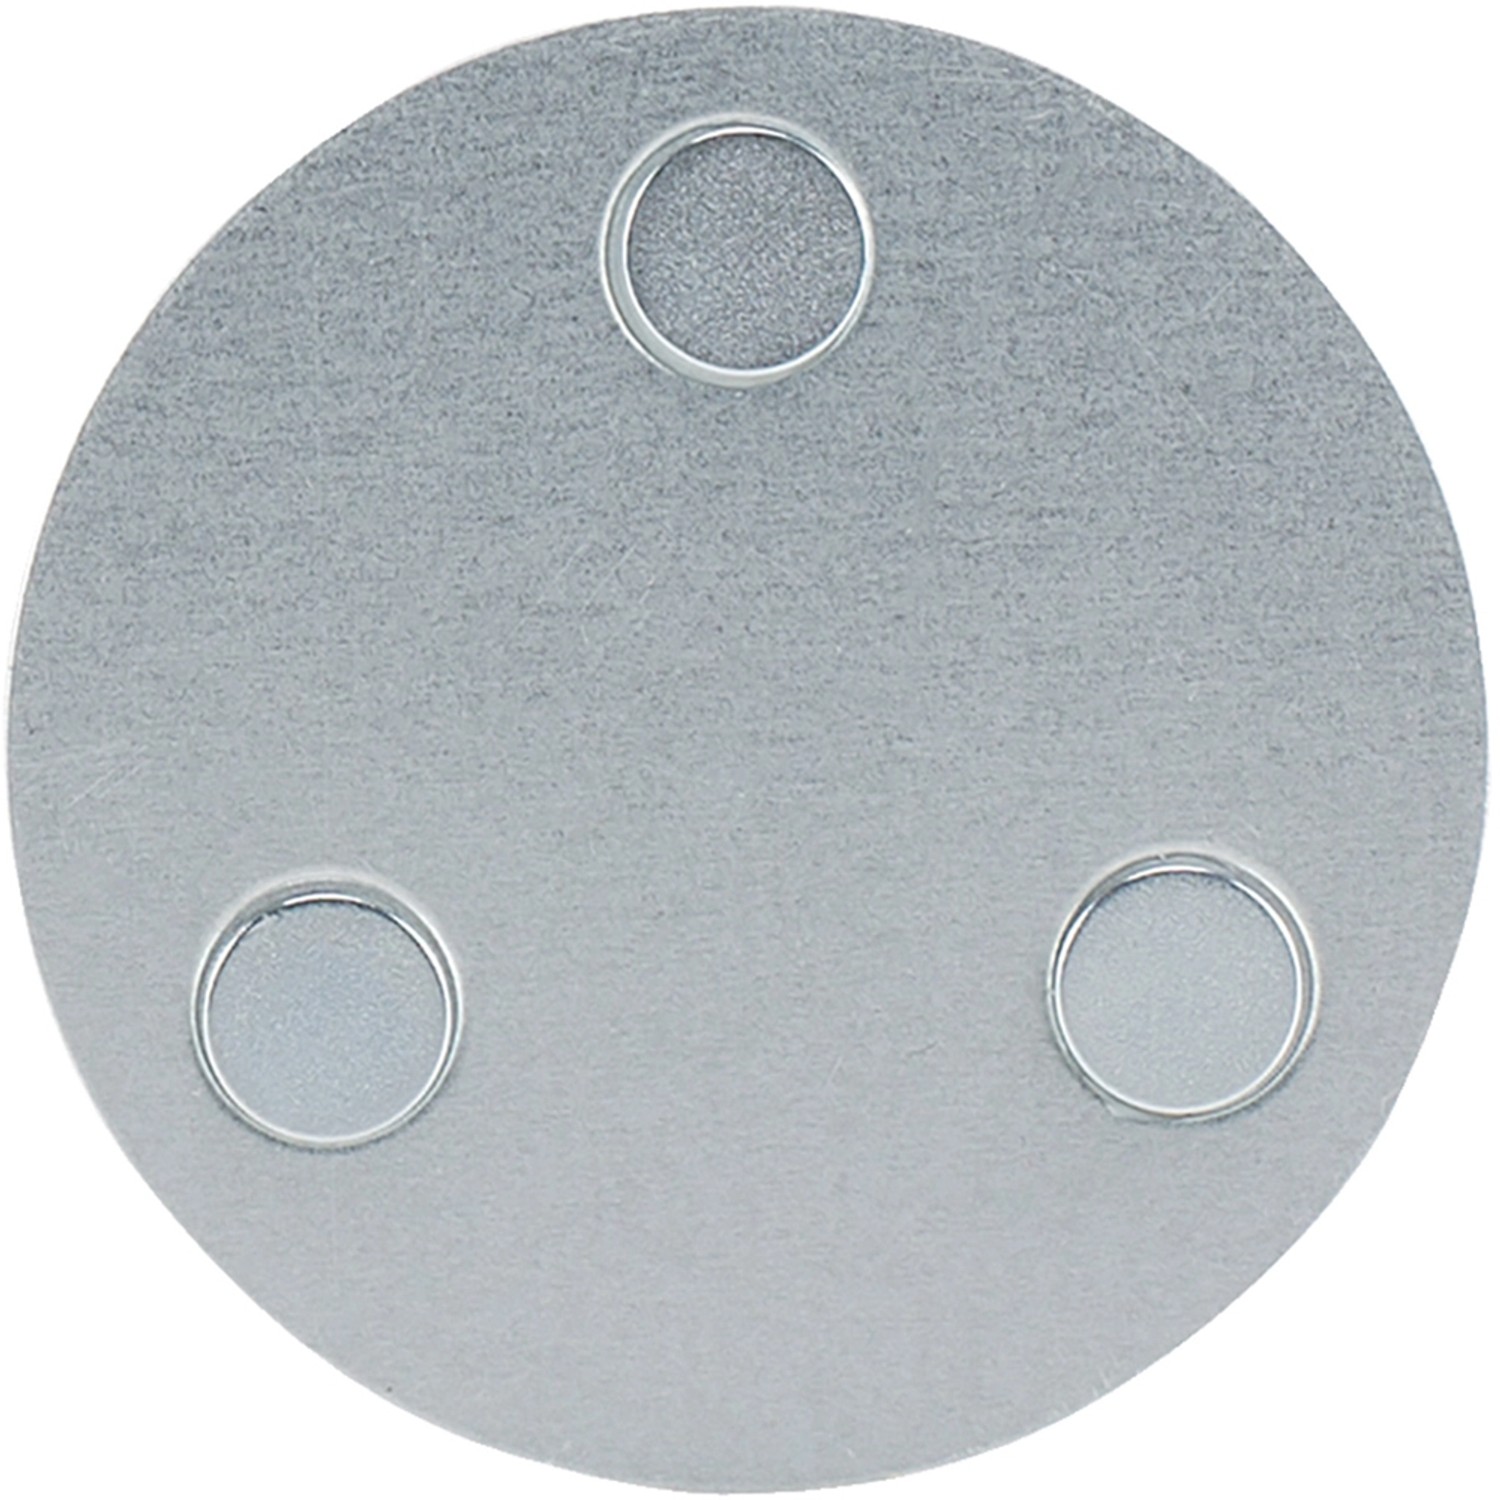 Image of Smartwares Magnetbefestigung für Rauchmelder RMAG60 Weiß